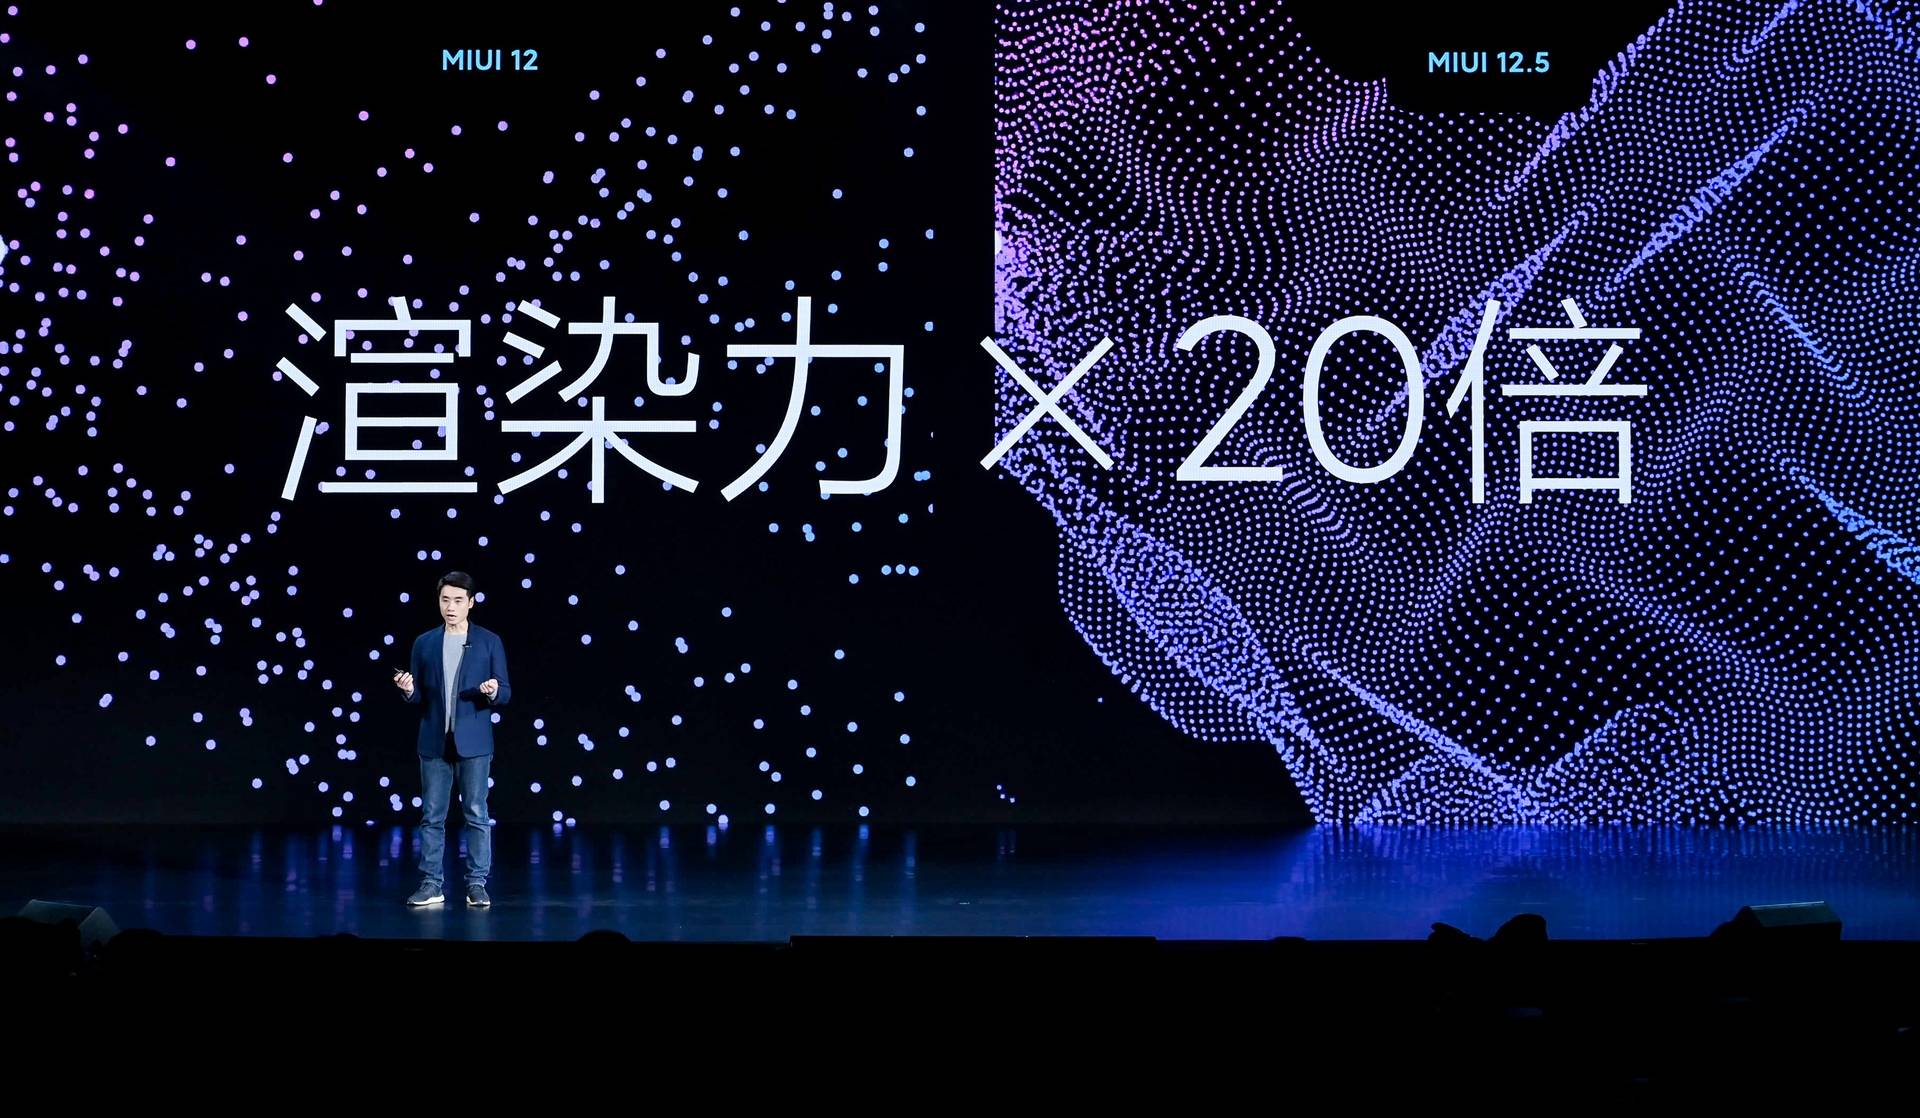 1001609156741 .pic hd - Conferenza Xiaomi Mi 11: Mi 11 offre le prestazioni più forti e lo schermo migliore, MIUI 12.5 è il corpo completo